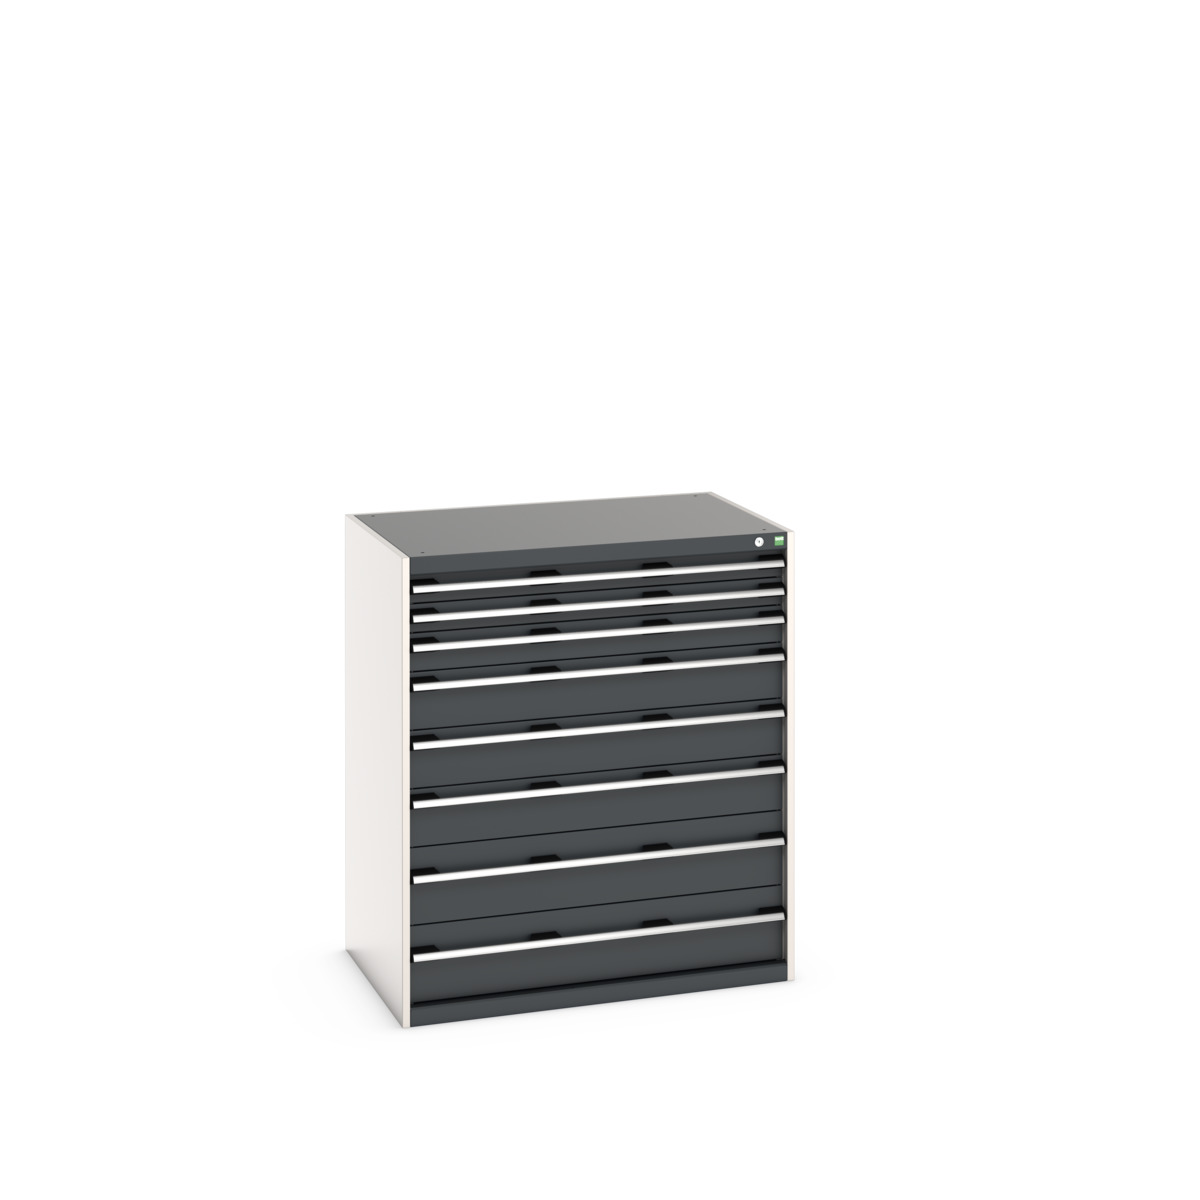 40029031.19V - cubio drawer cabinet